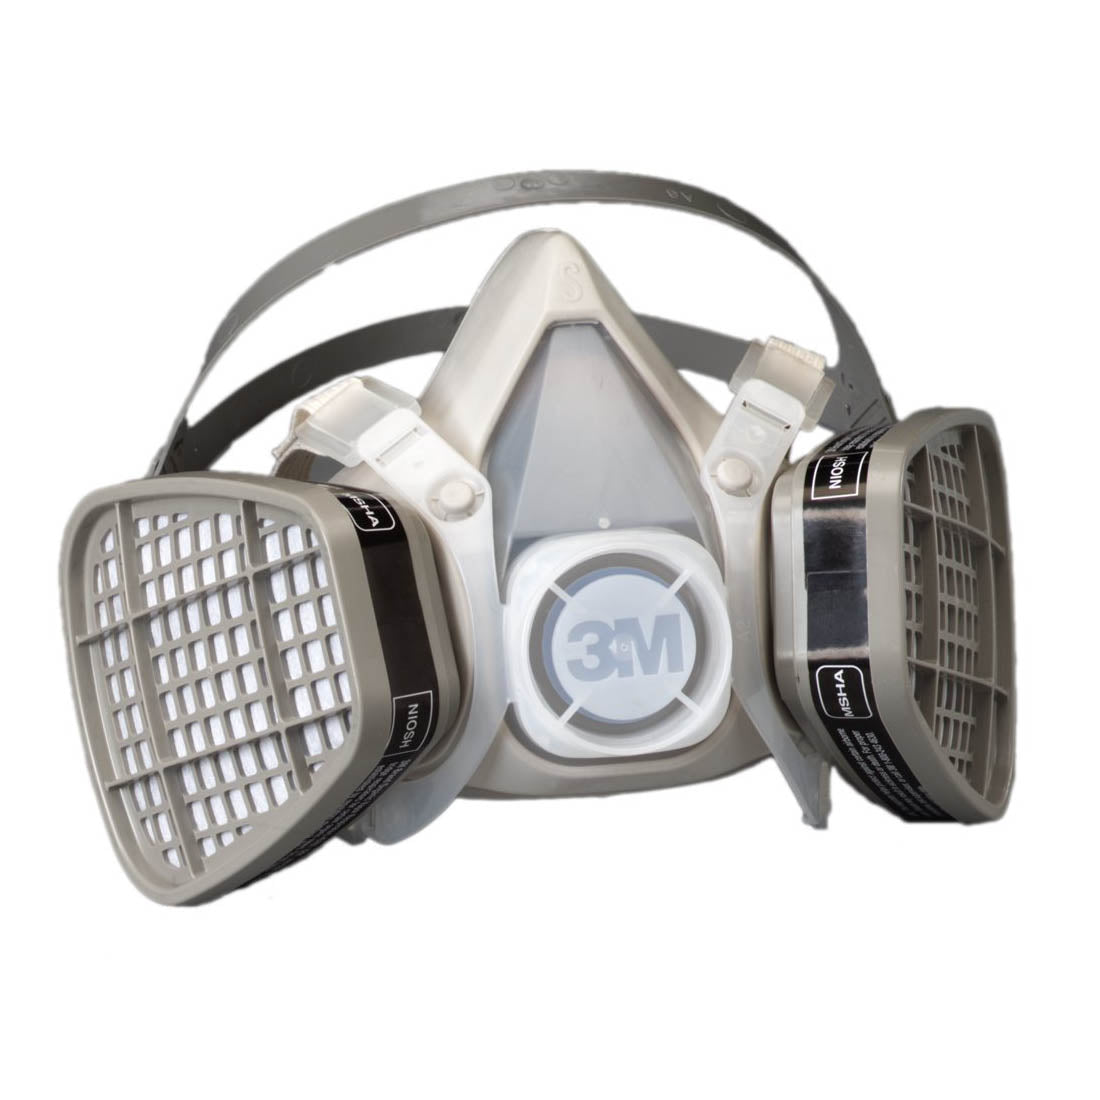 Respirateur jetable 3M, demi-pièce faciale 5101, protection respiratoire contre les vapeurs organiques, petite taille 